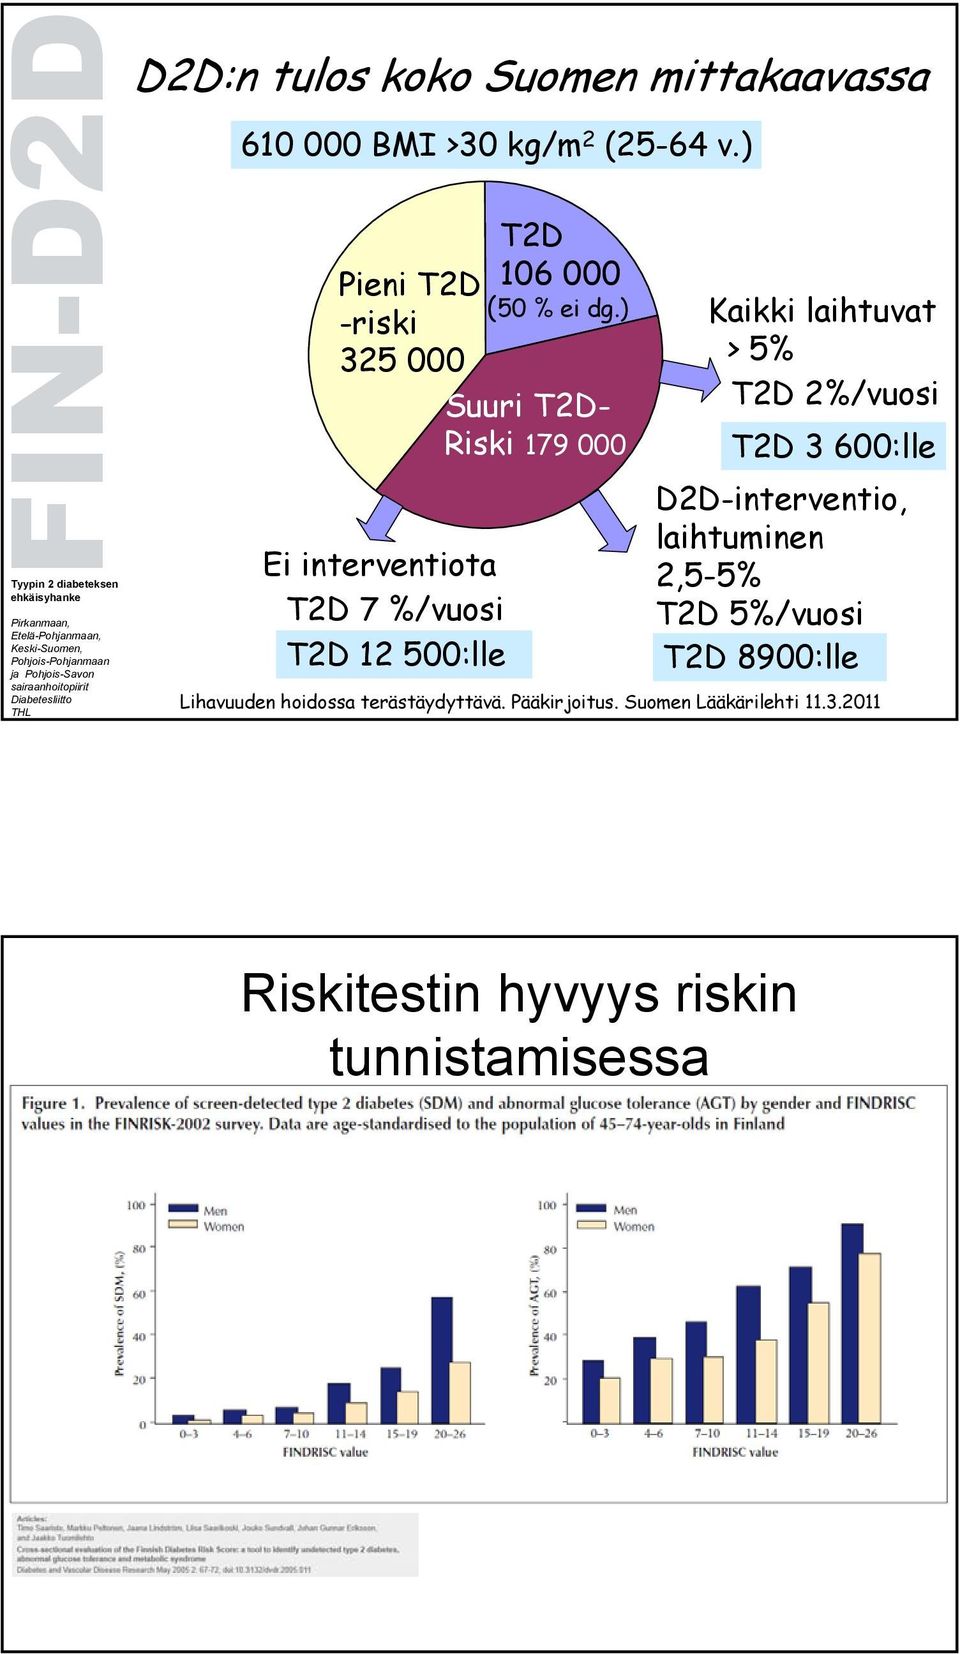 ) -riski 325 000 Suuri T2D- Riski 179 000 Ei interventiota T2D 7 %/vuosi T2D 12 500:lle Kaikki laihtuvat >